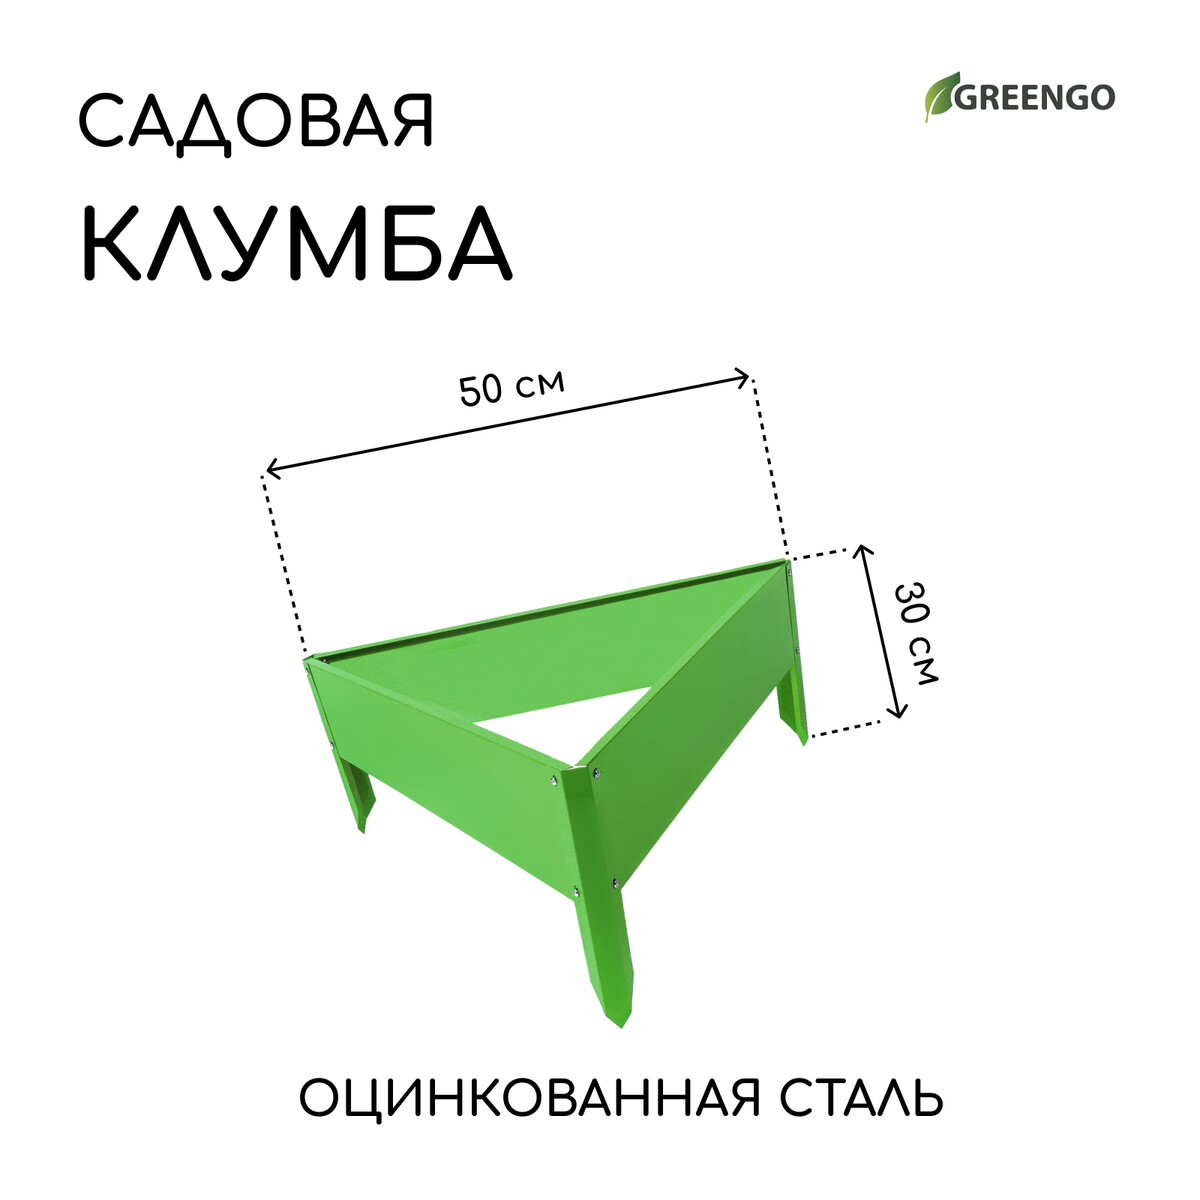 Клумба оцинкованная, 50 × 15 см, ярко-зеленая,